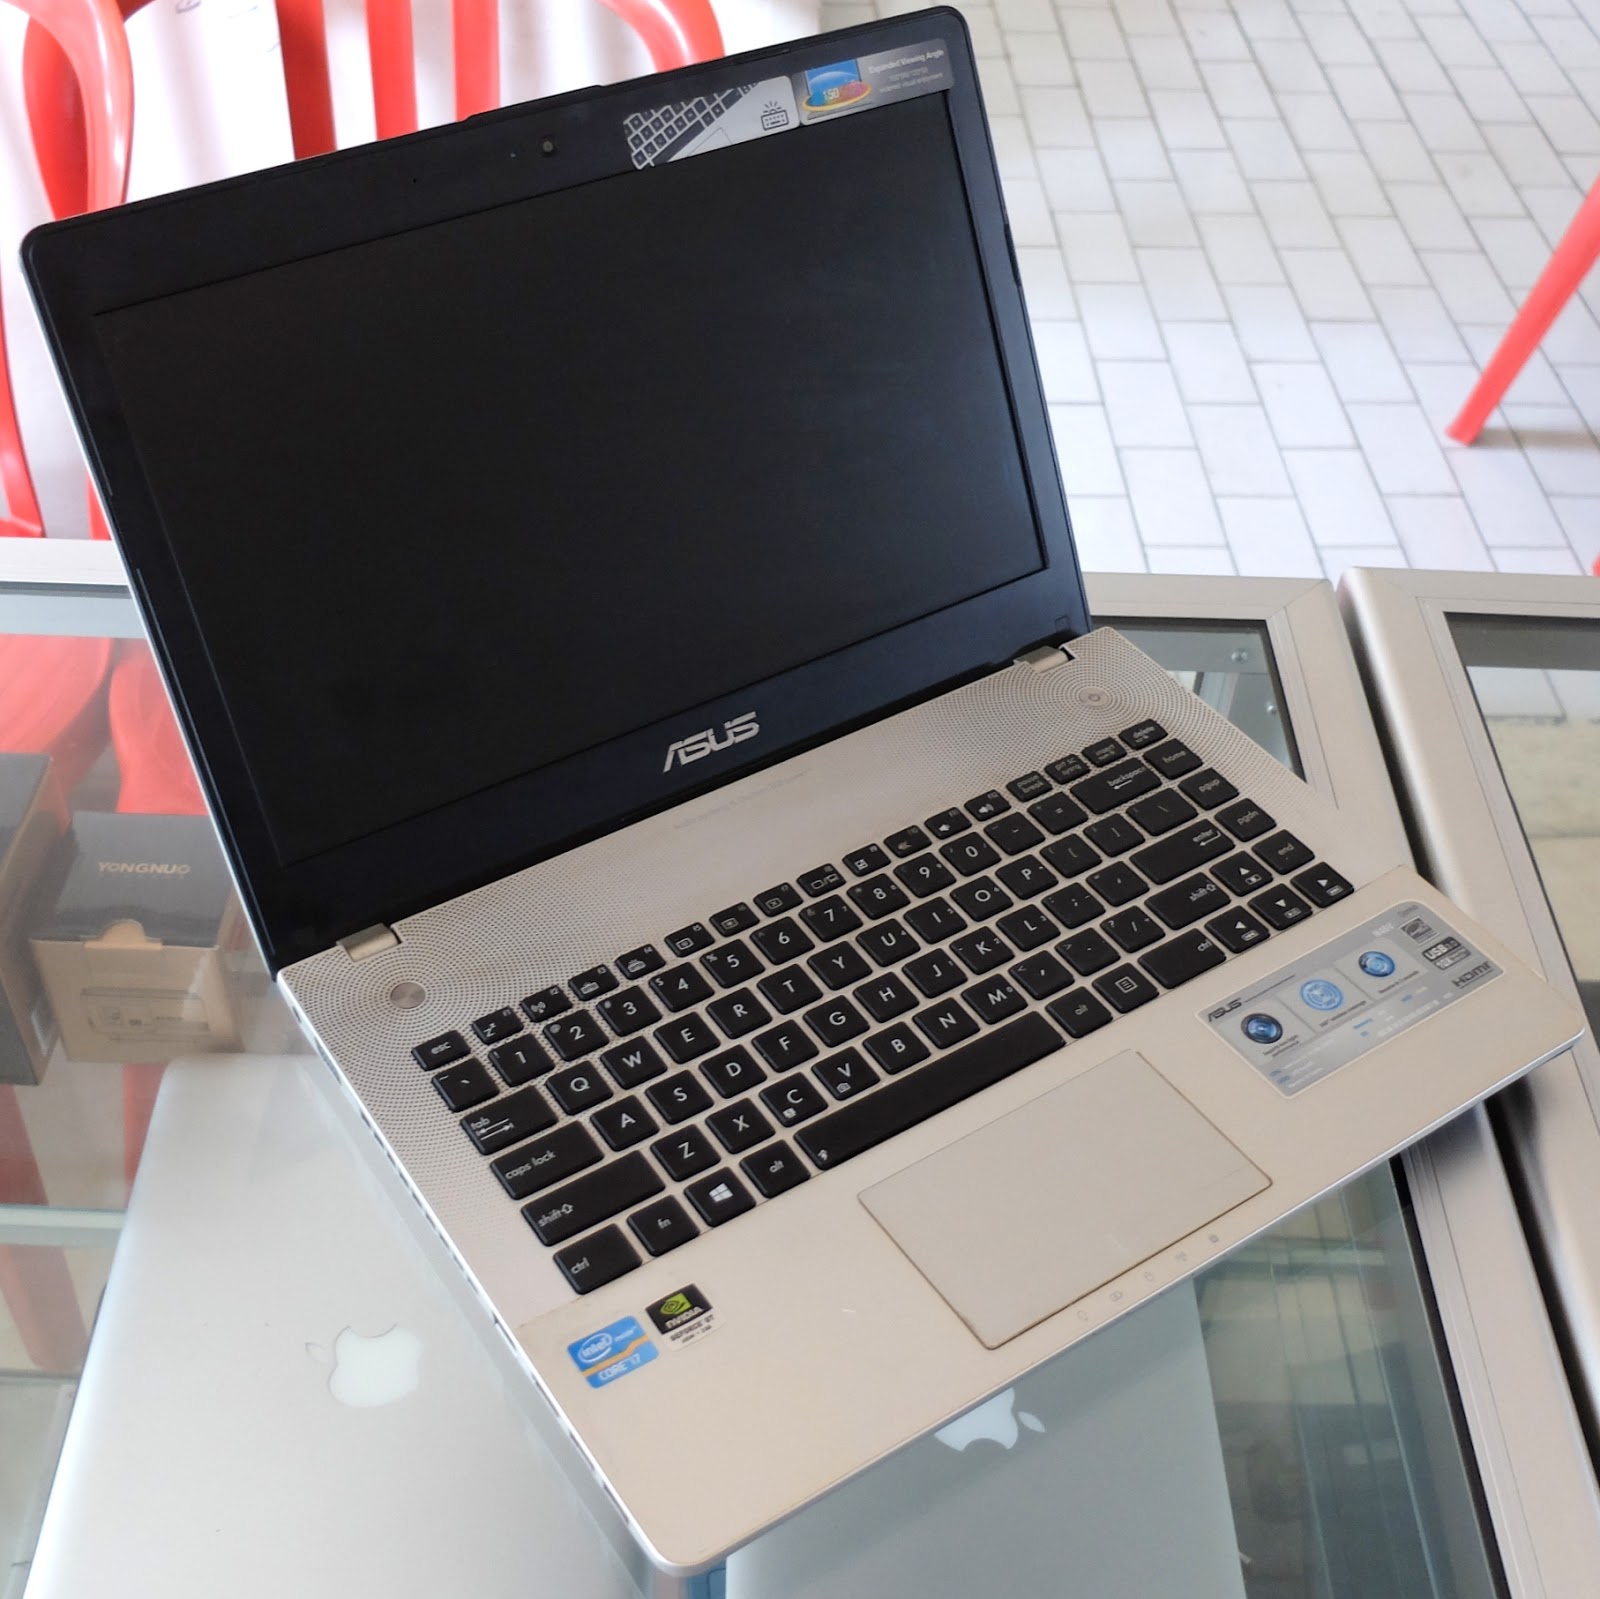 Jual Laptop ASUS N46VZ Core i7 Double VGA | Jual Beli ...